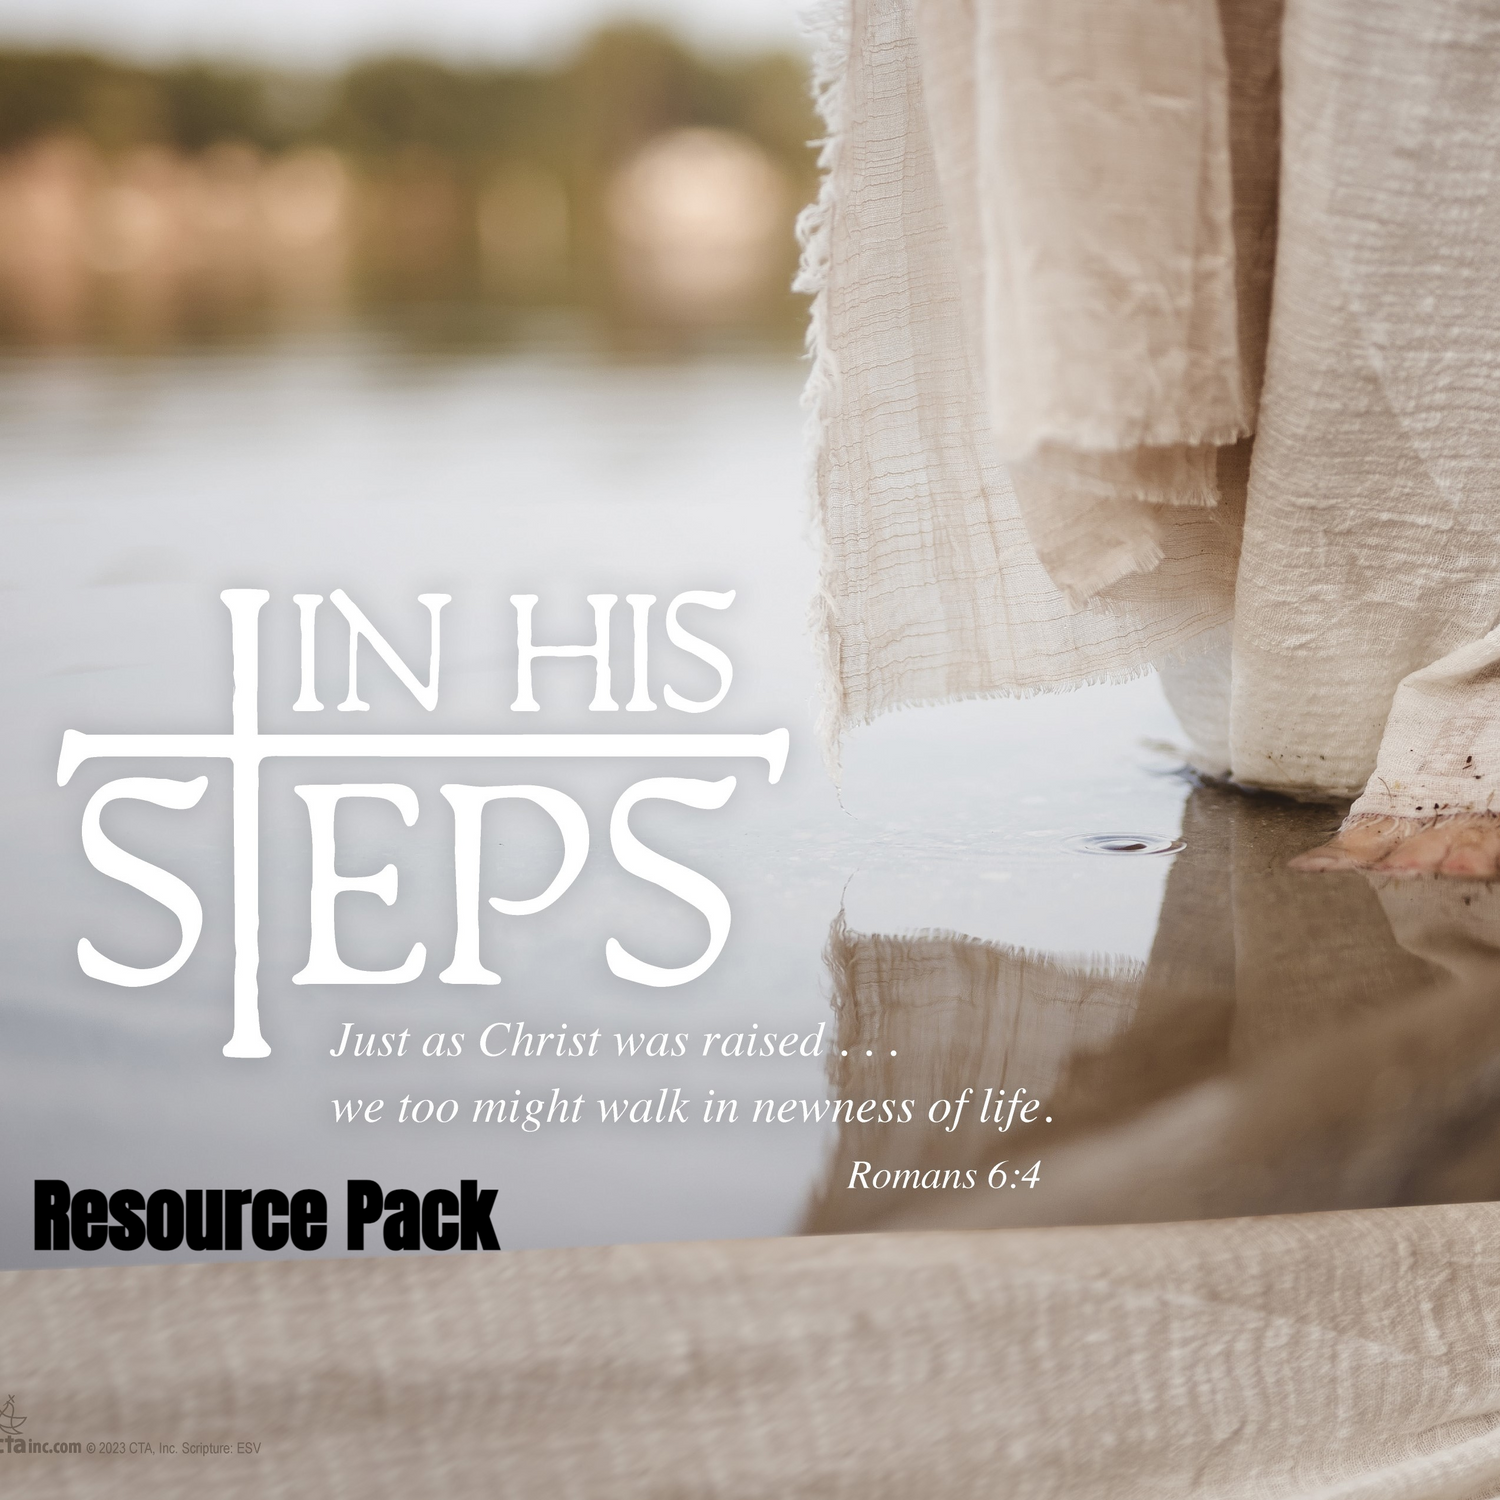 ESV Resource Pack - In His Steps